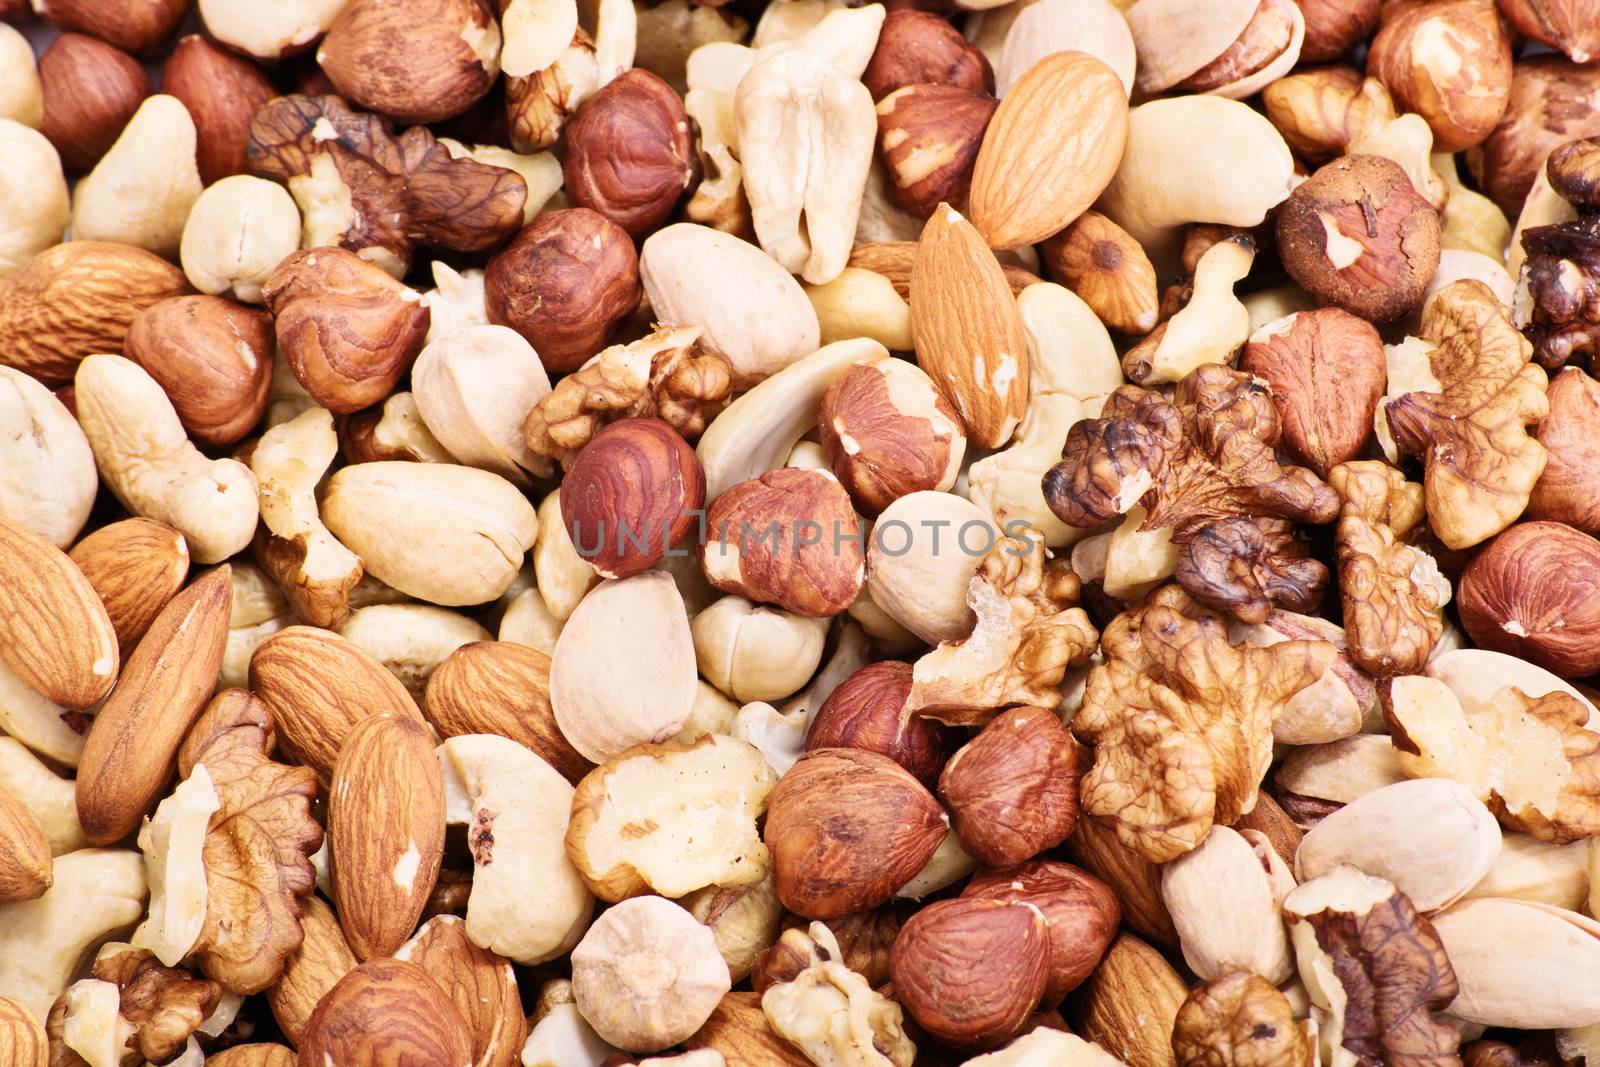 Almonds, hazelnuts, walnuts, cashews and pistachios by Mendelex